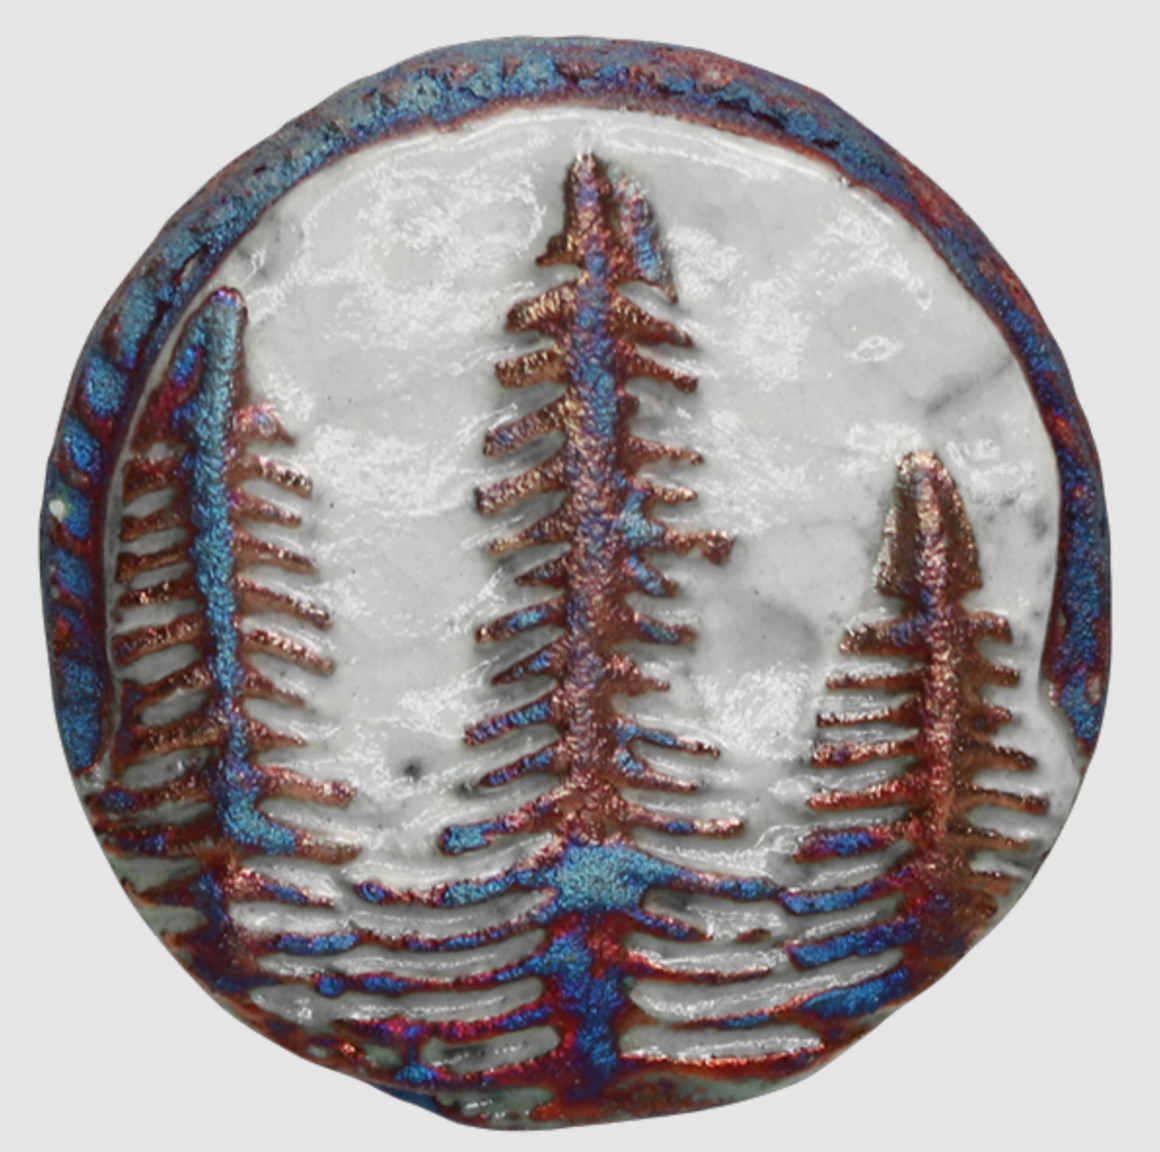 Fir Trees Medallion Magnet from Raku Pottery